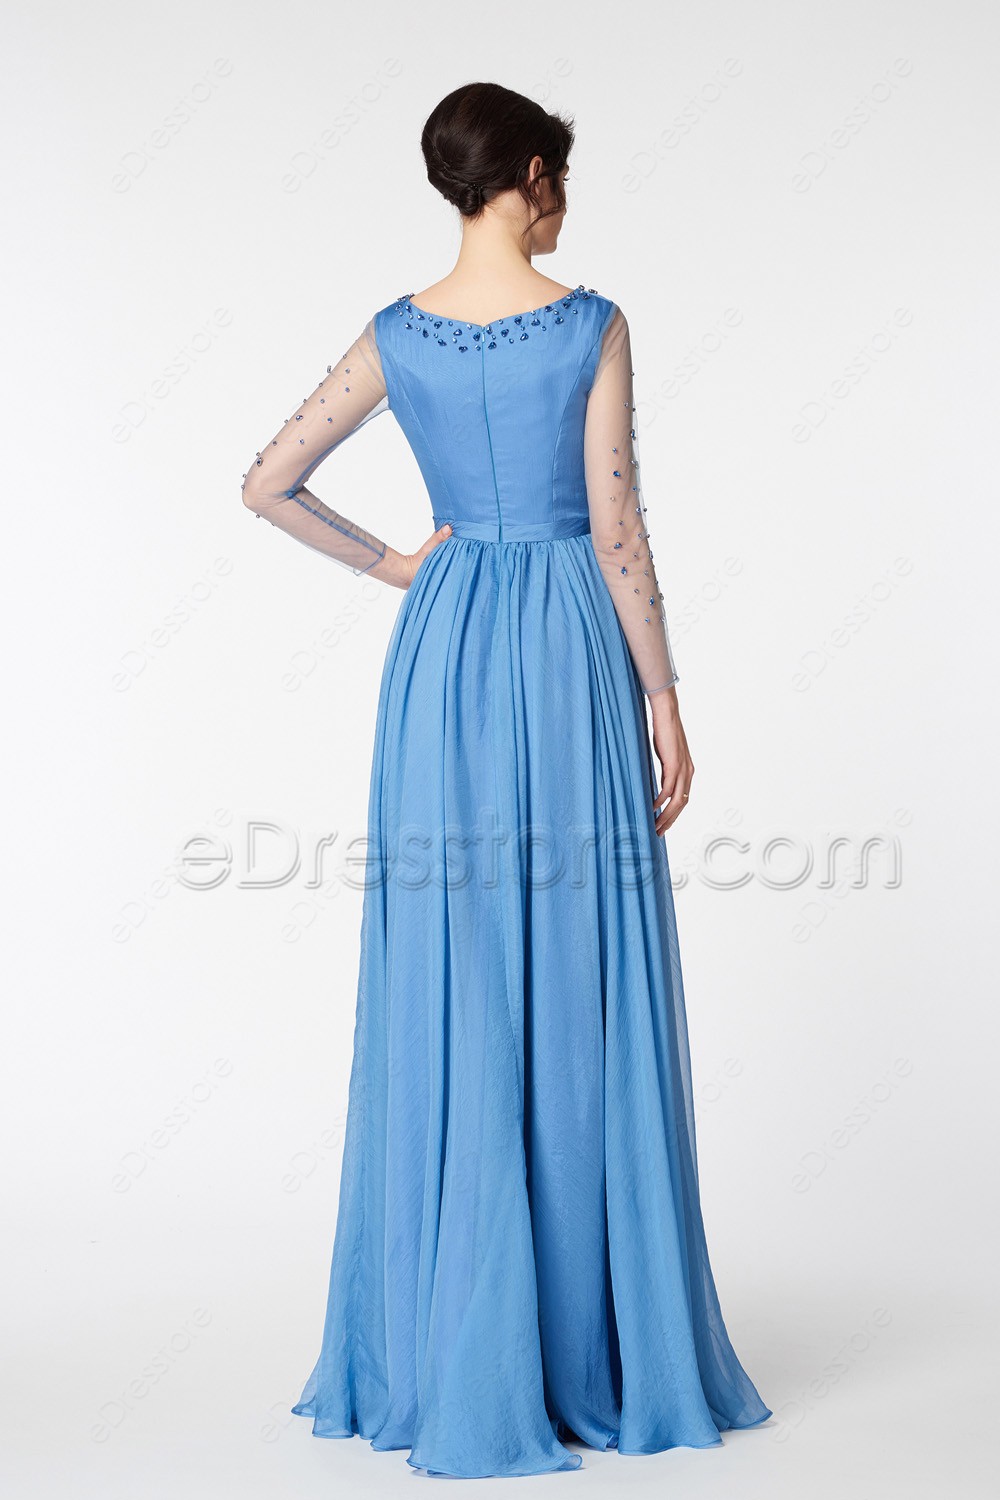 Lakeside Blue Beaded Modest Prom Dresses Long Sleeves